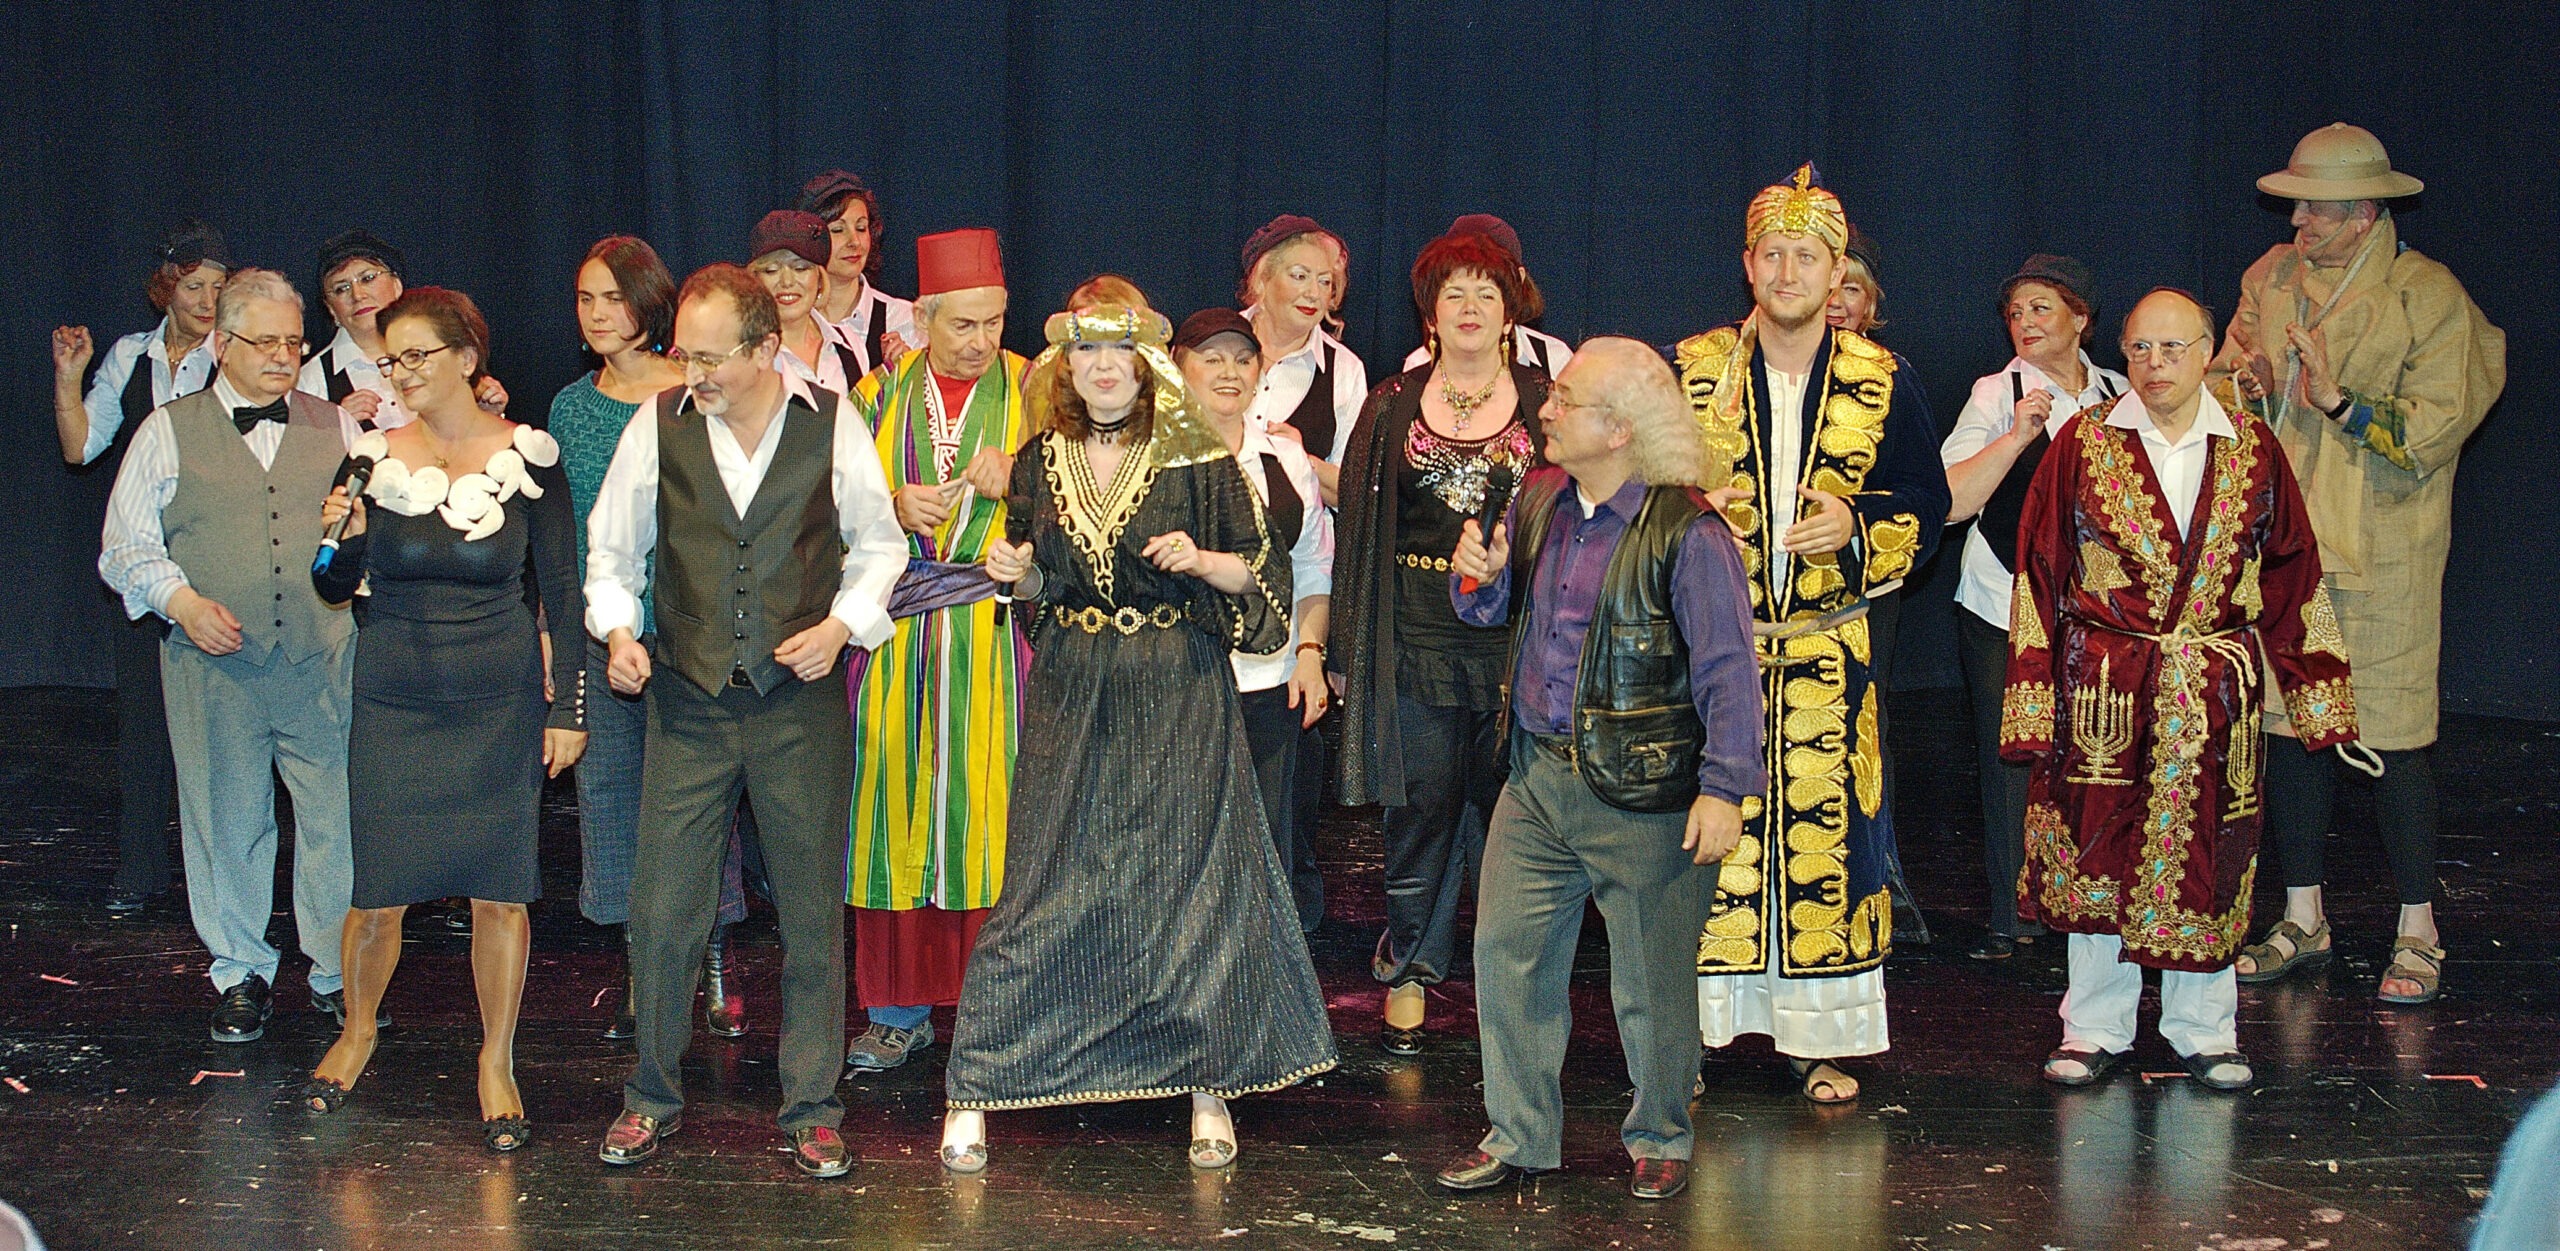 Groupe de théâtre de la communauté juive de Wiesbaden lors d'une représentation à Wartburg. Photographe : Igor Eisenschtat. Collection de la communauté juive de Wiesbaden